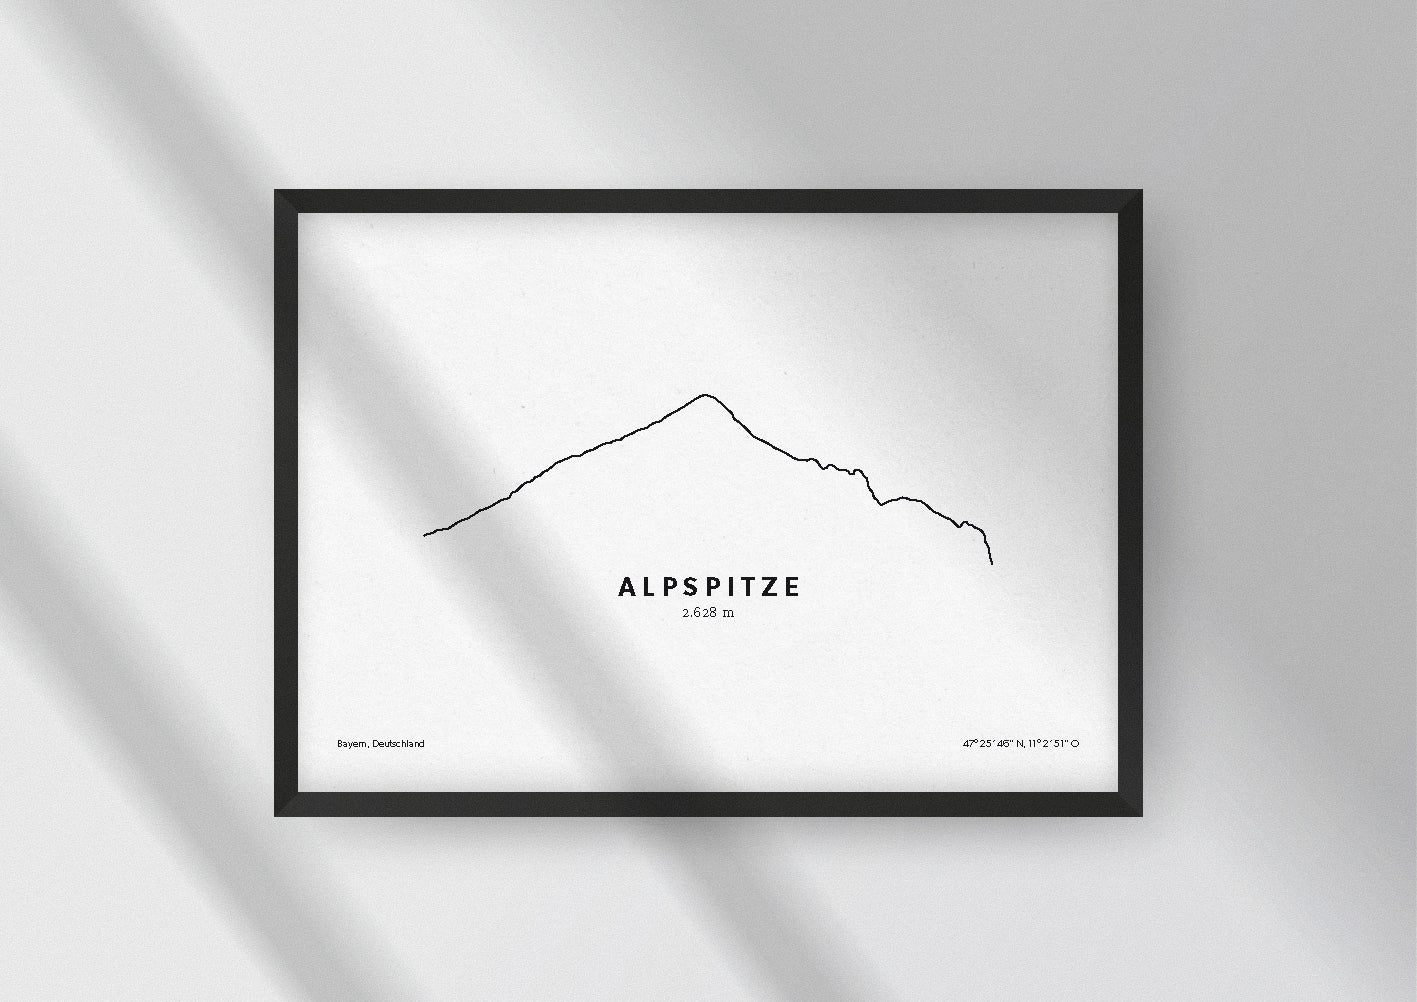 Minimalistische Illustration der Alpspitze in Bayern, als stilvoller Einrichtungsgegenstand für Zuhause.